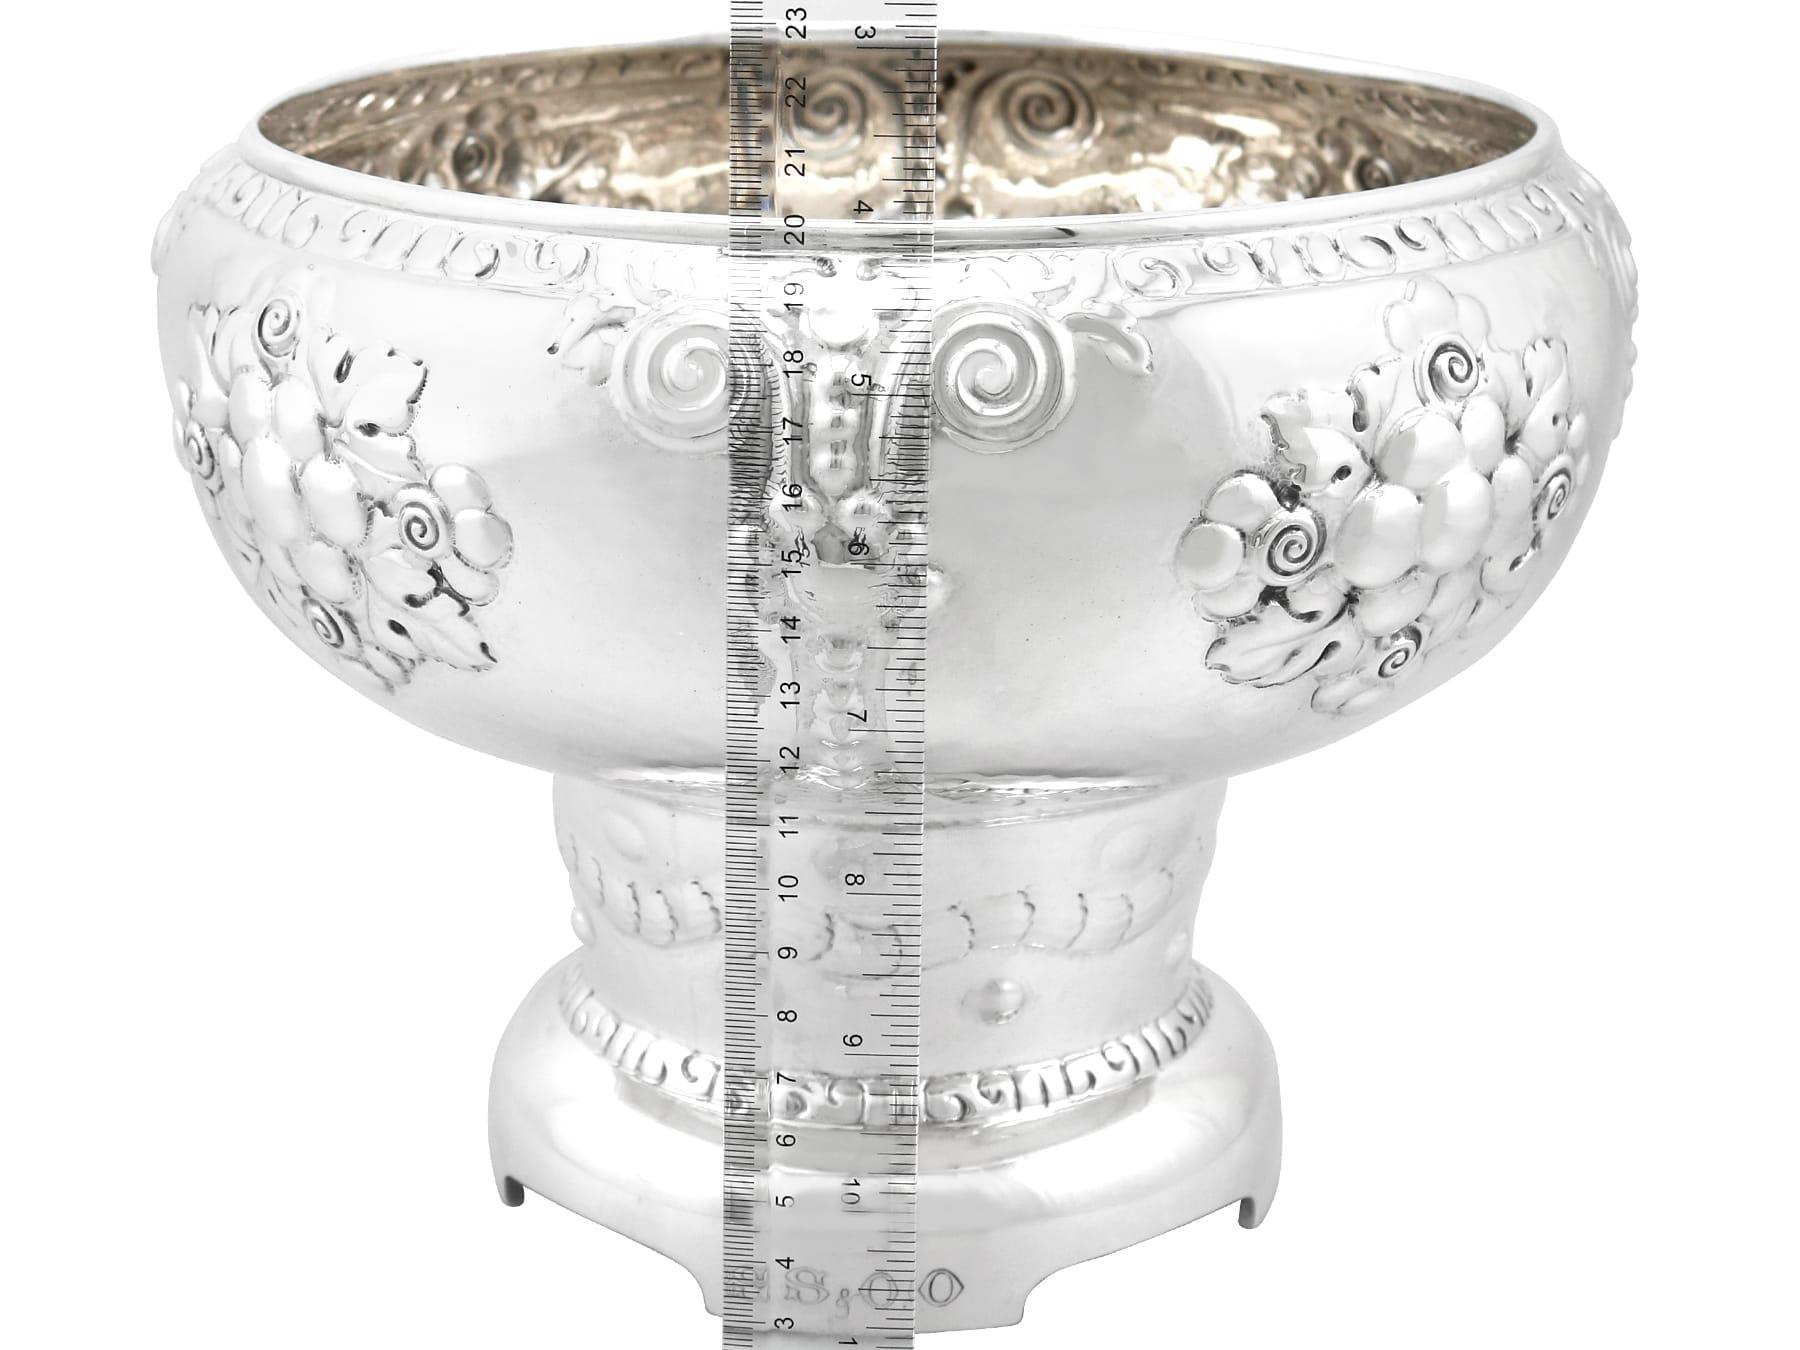 Magnus Aase Antique Norwegian Silver Presentation Bowl For Sale 2